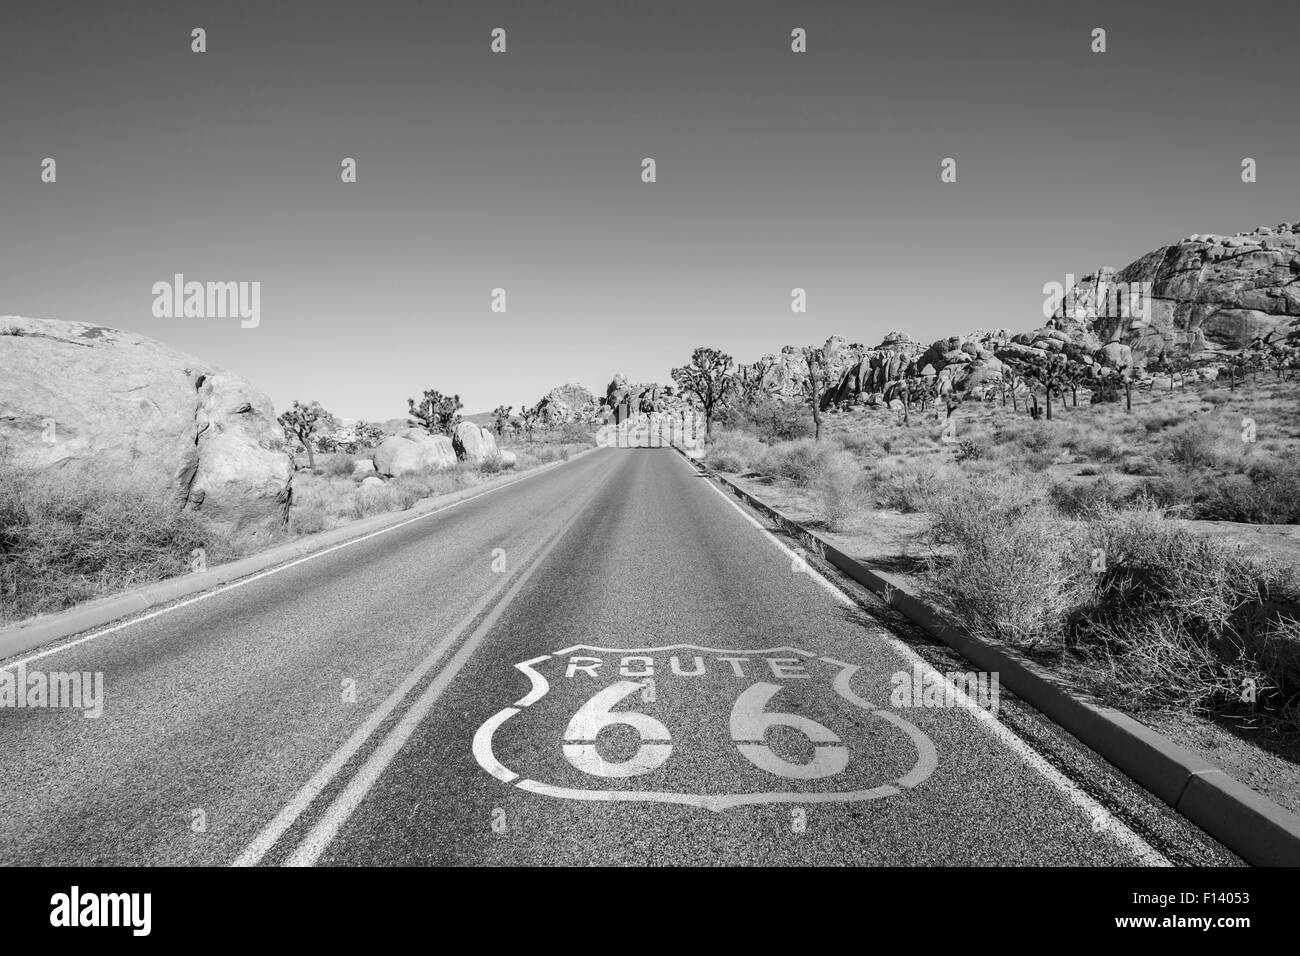 La route de Joshua Tree avec Route 66 pavement sign en noir et blanc. Banque D'Images